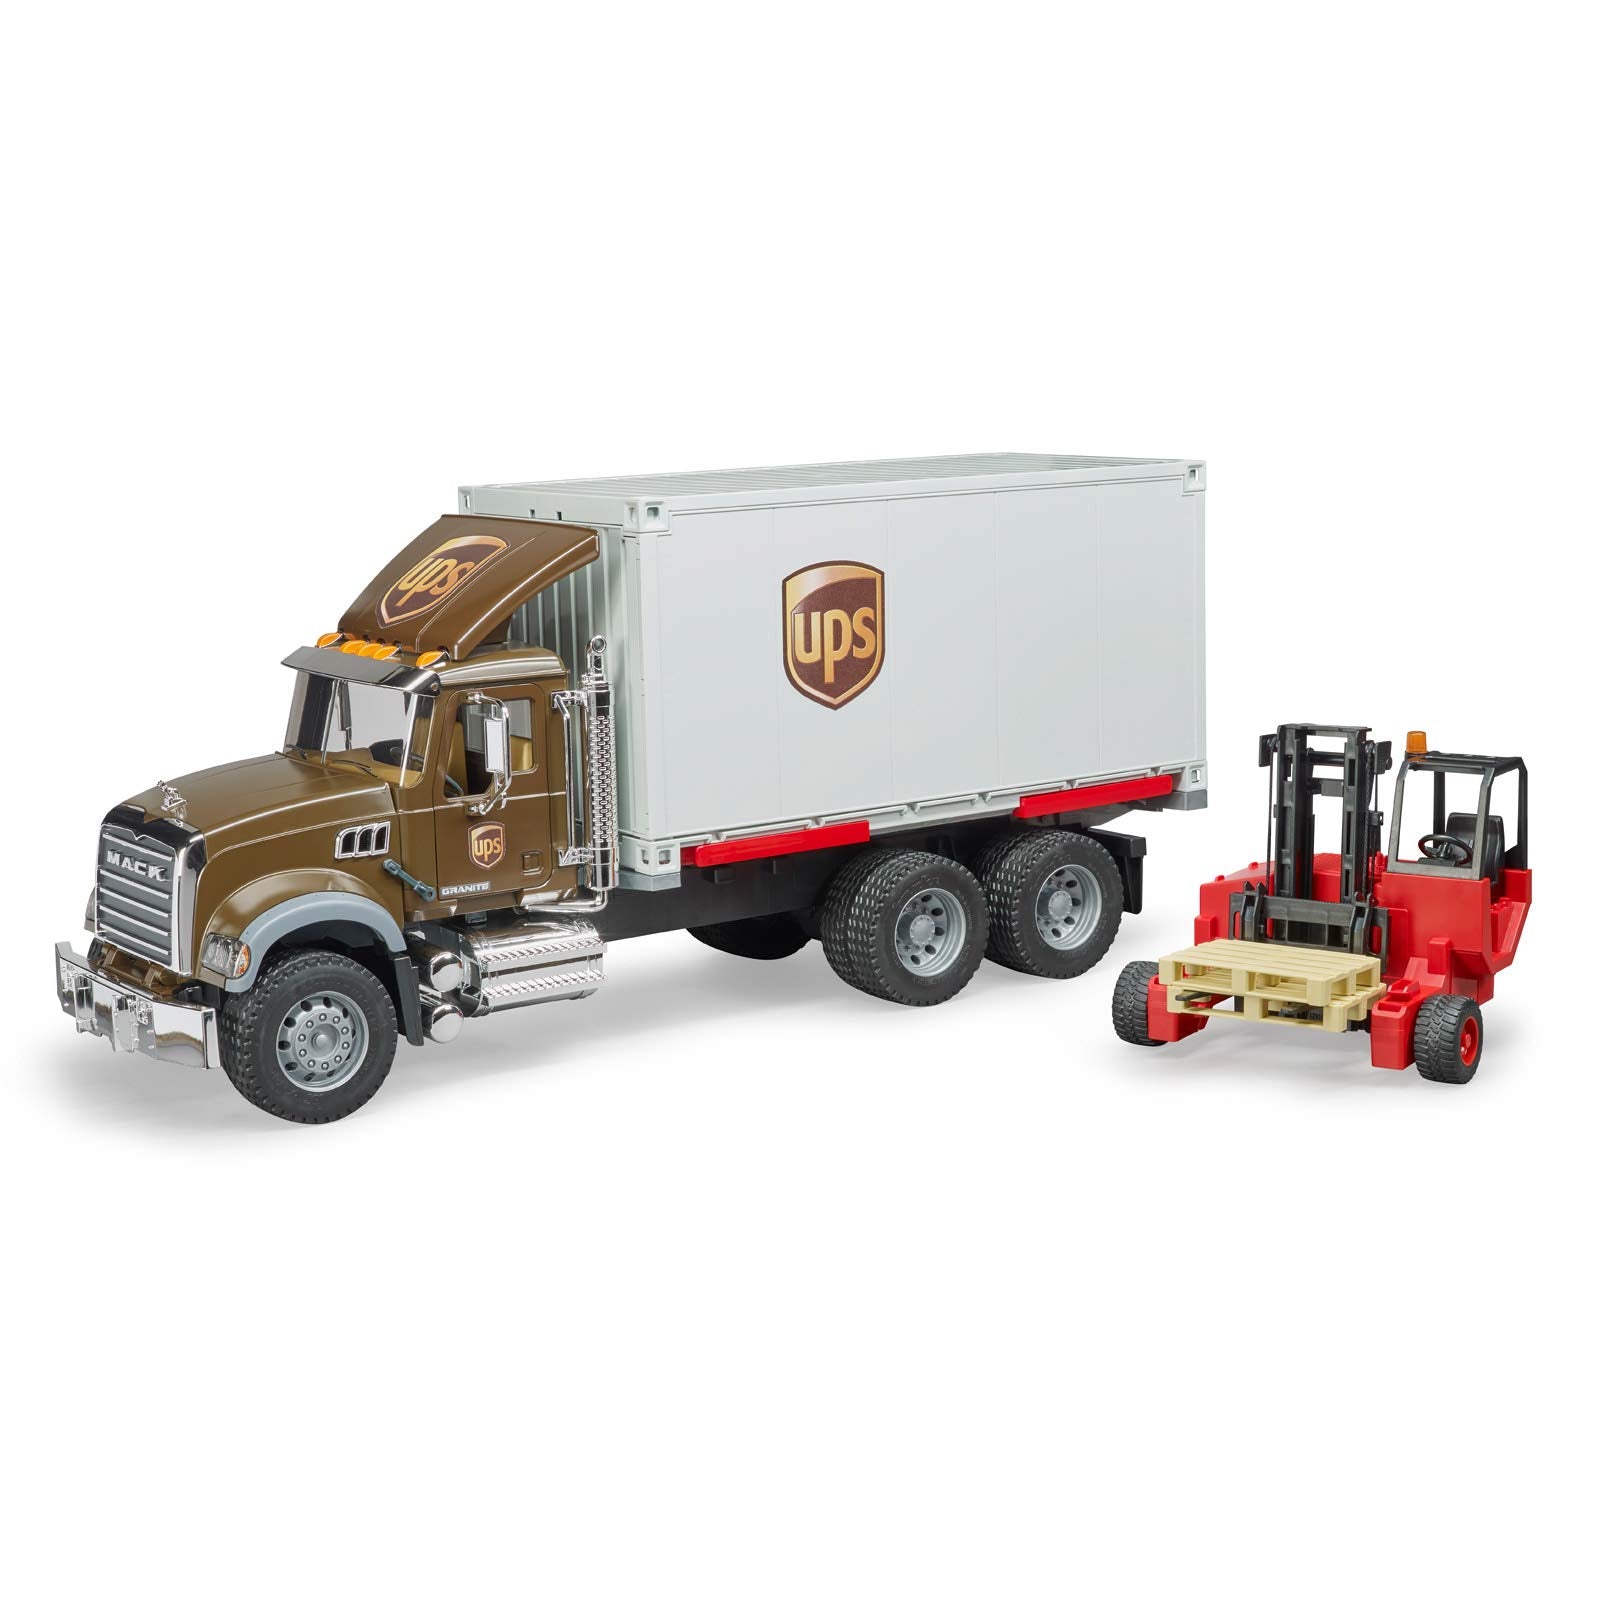 Bruder-MACK Granite UPS Logistics Truck + Forklift-02828-Legacy Toys